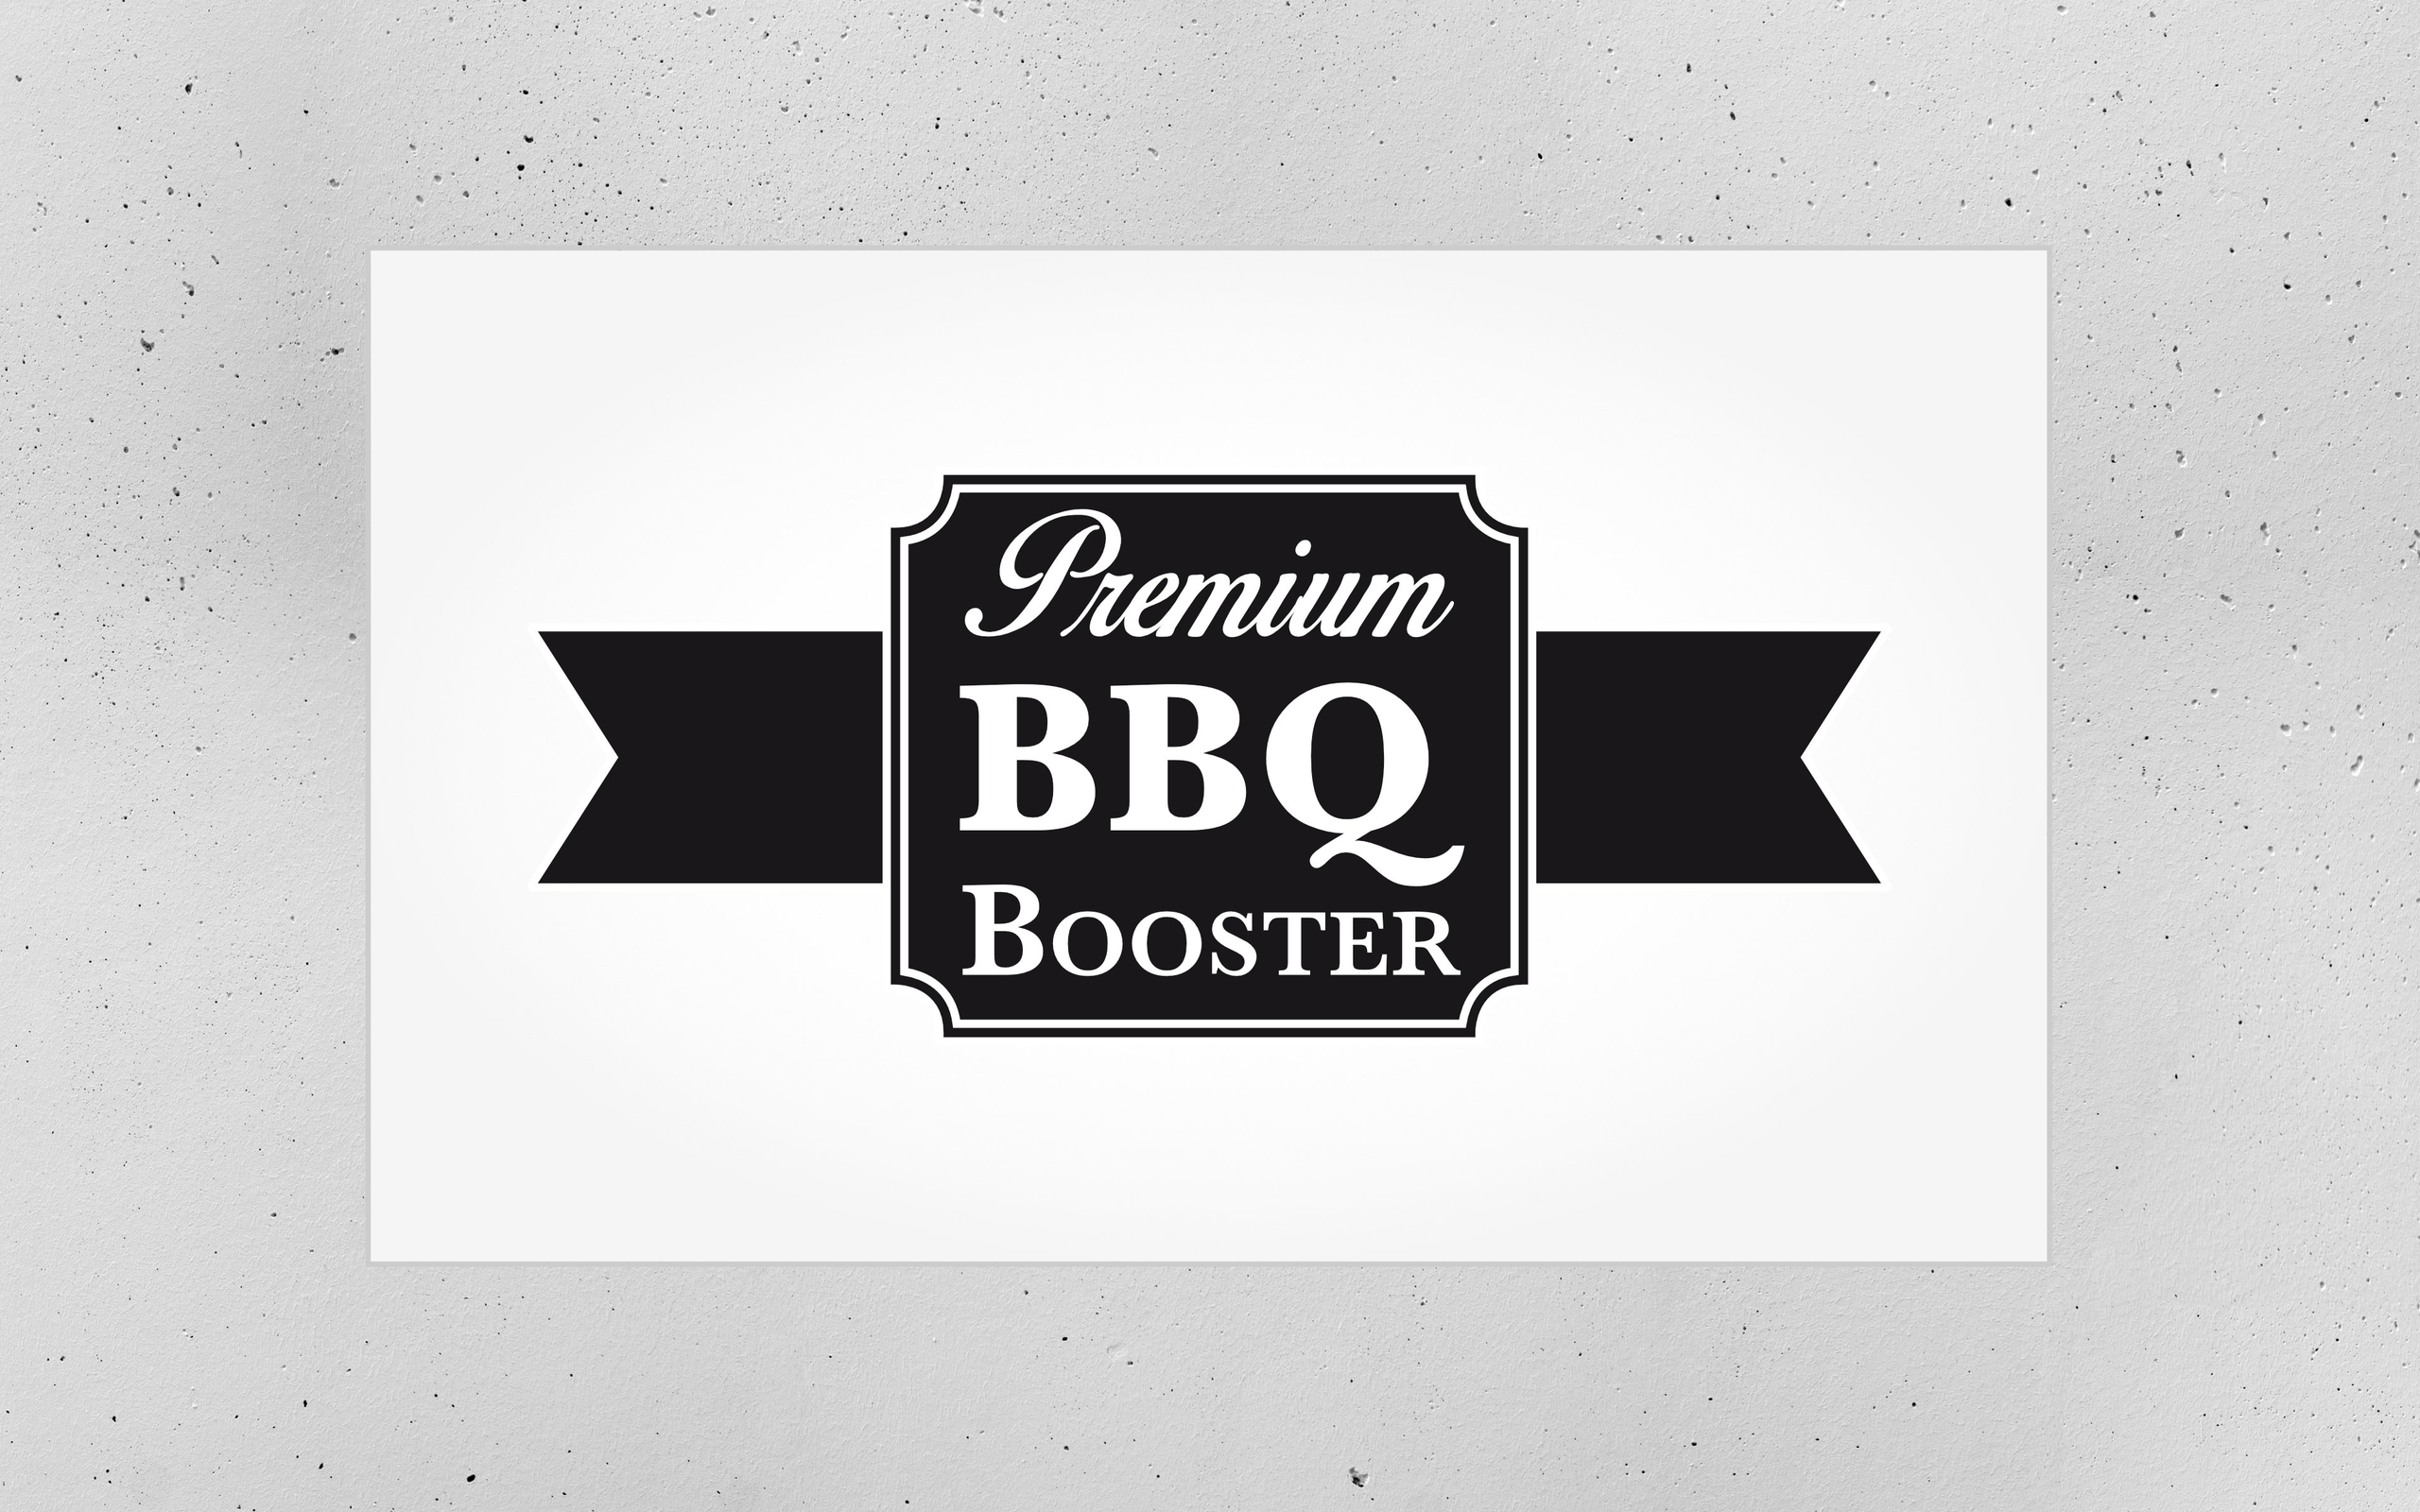 Legende  BBQ Booster - Themenmarke im Grillsortiment